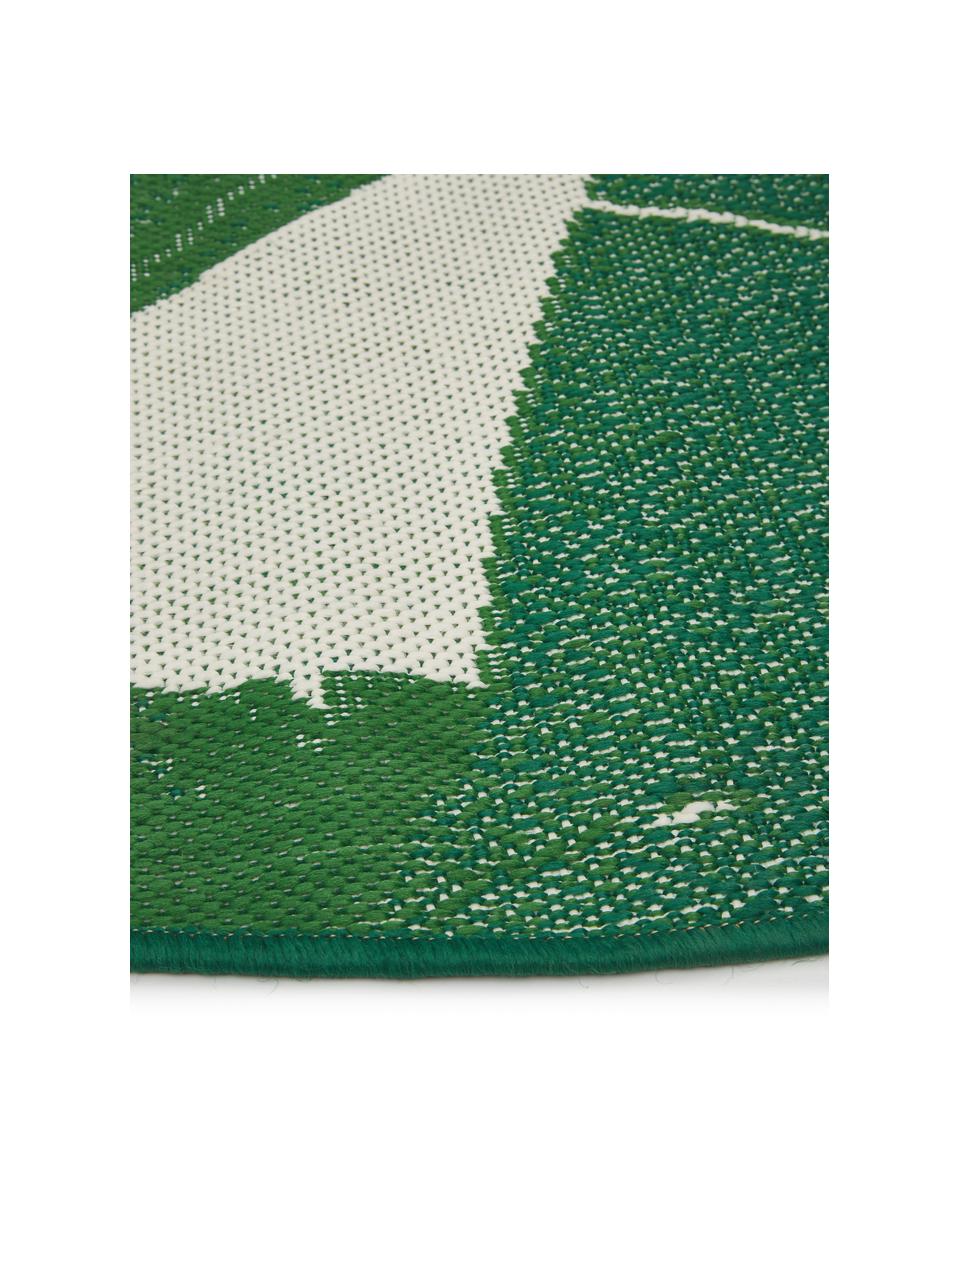 Vnitřní a venkovní koberec se vzorem listů Jungle, 86 % polypropylen, 14 % polyester, Bílá, zelená, Ø 140 cm (velikost M)